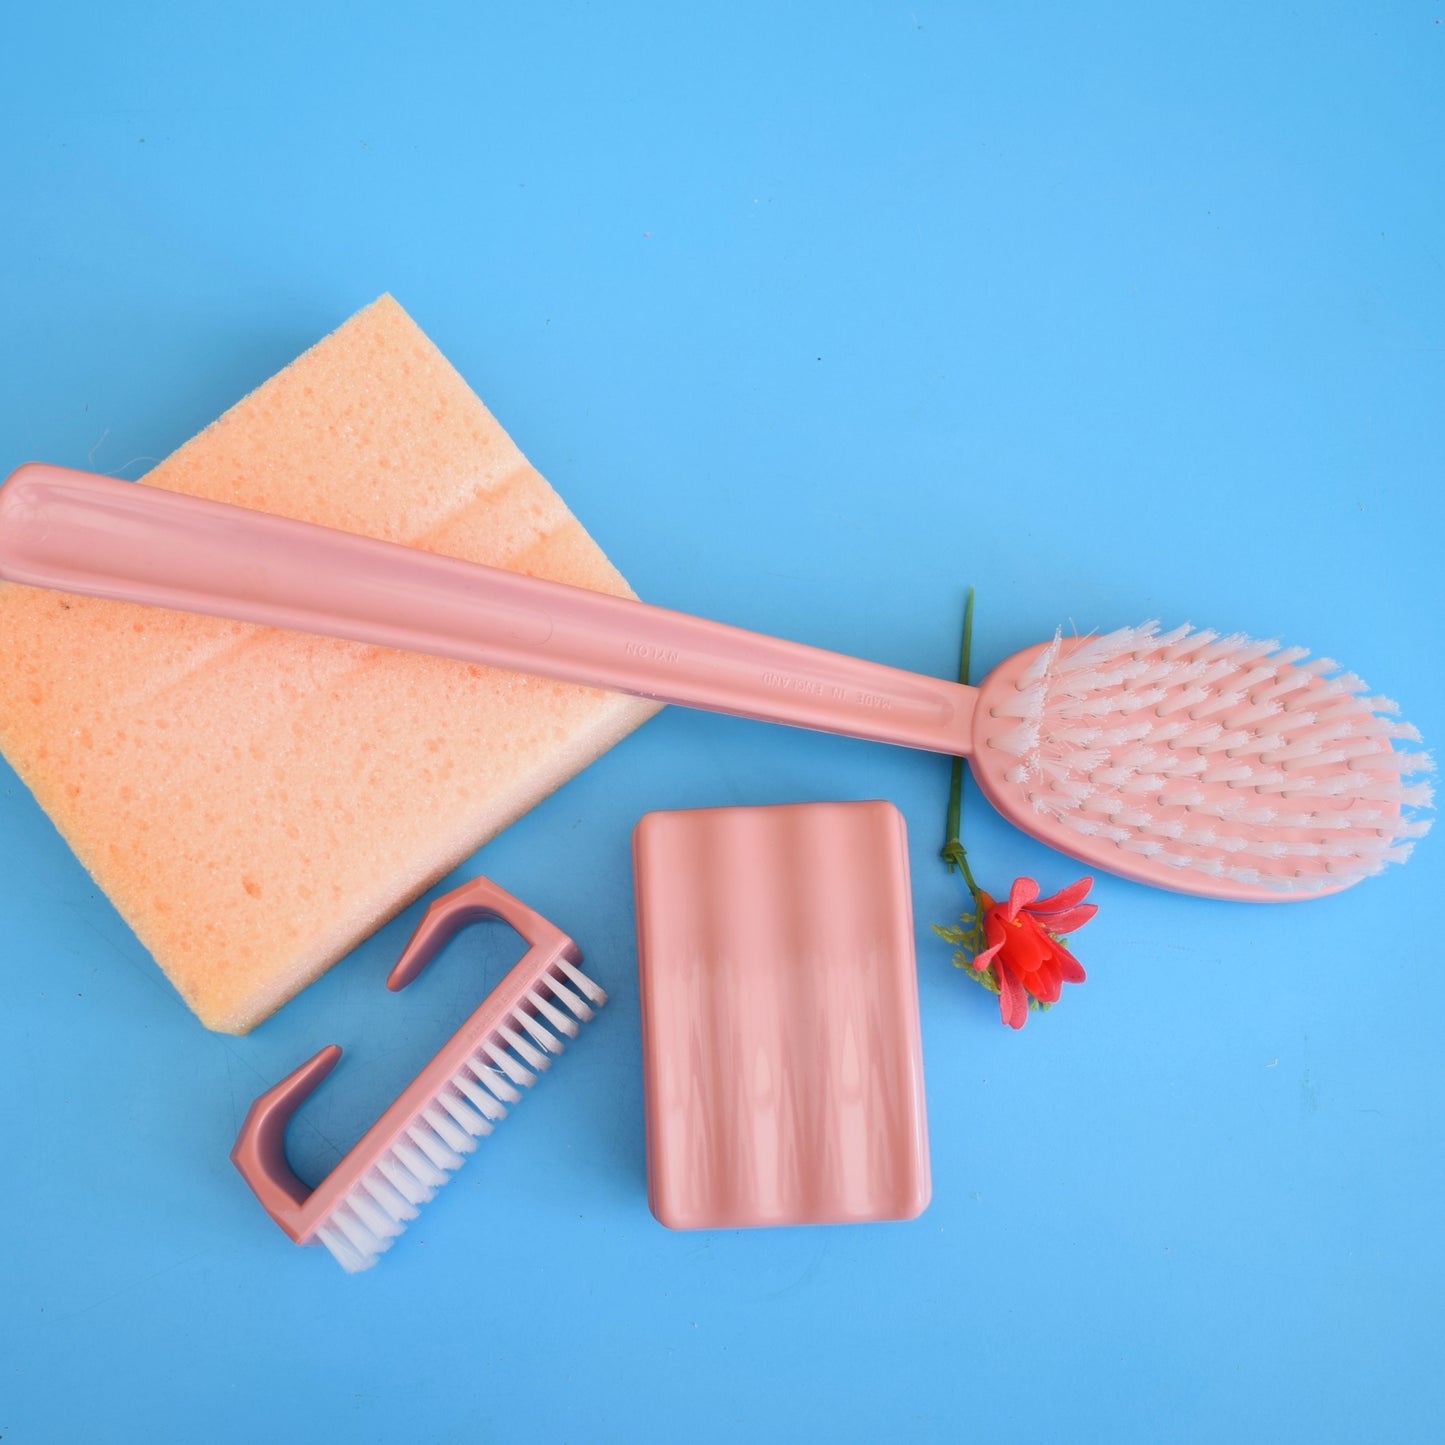 Vintage 1960s Bathroom Gift Set - Pink